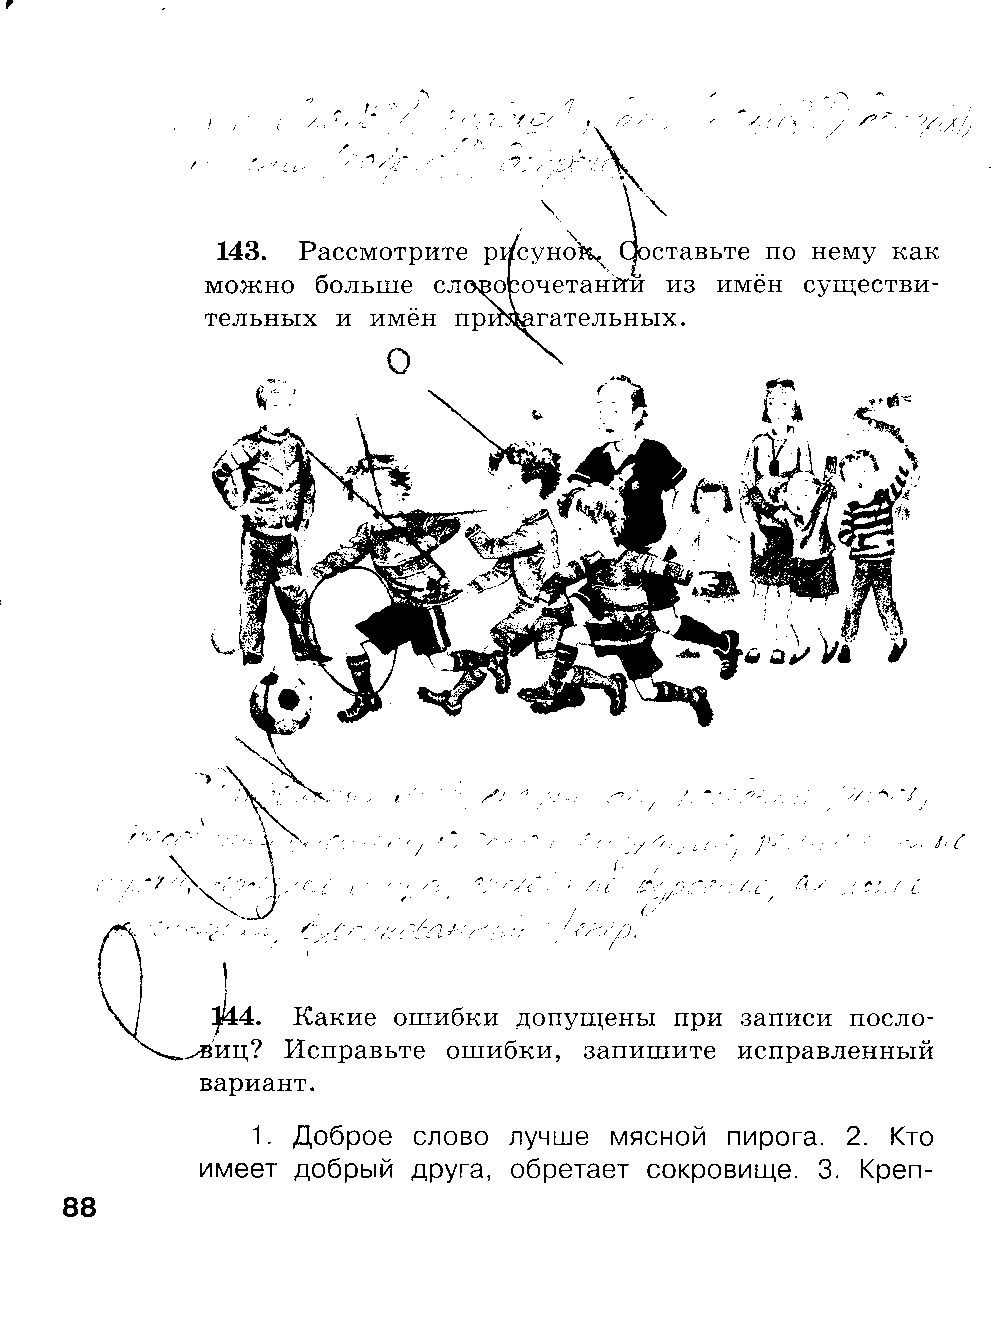 ГДЗ Русский язык 3 класс - стр. 88